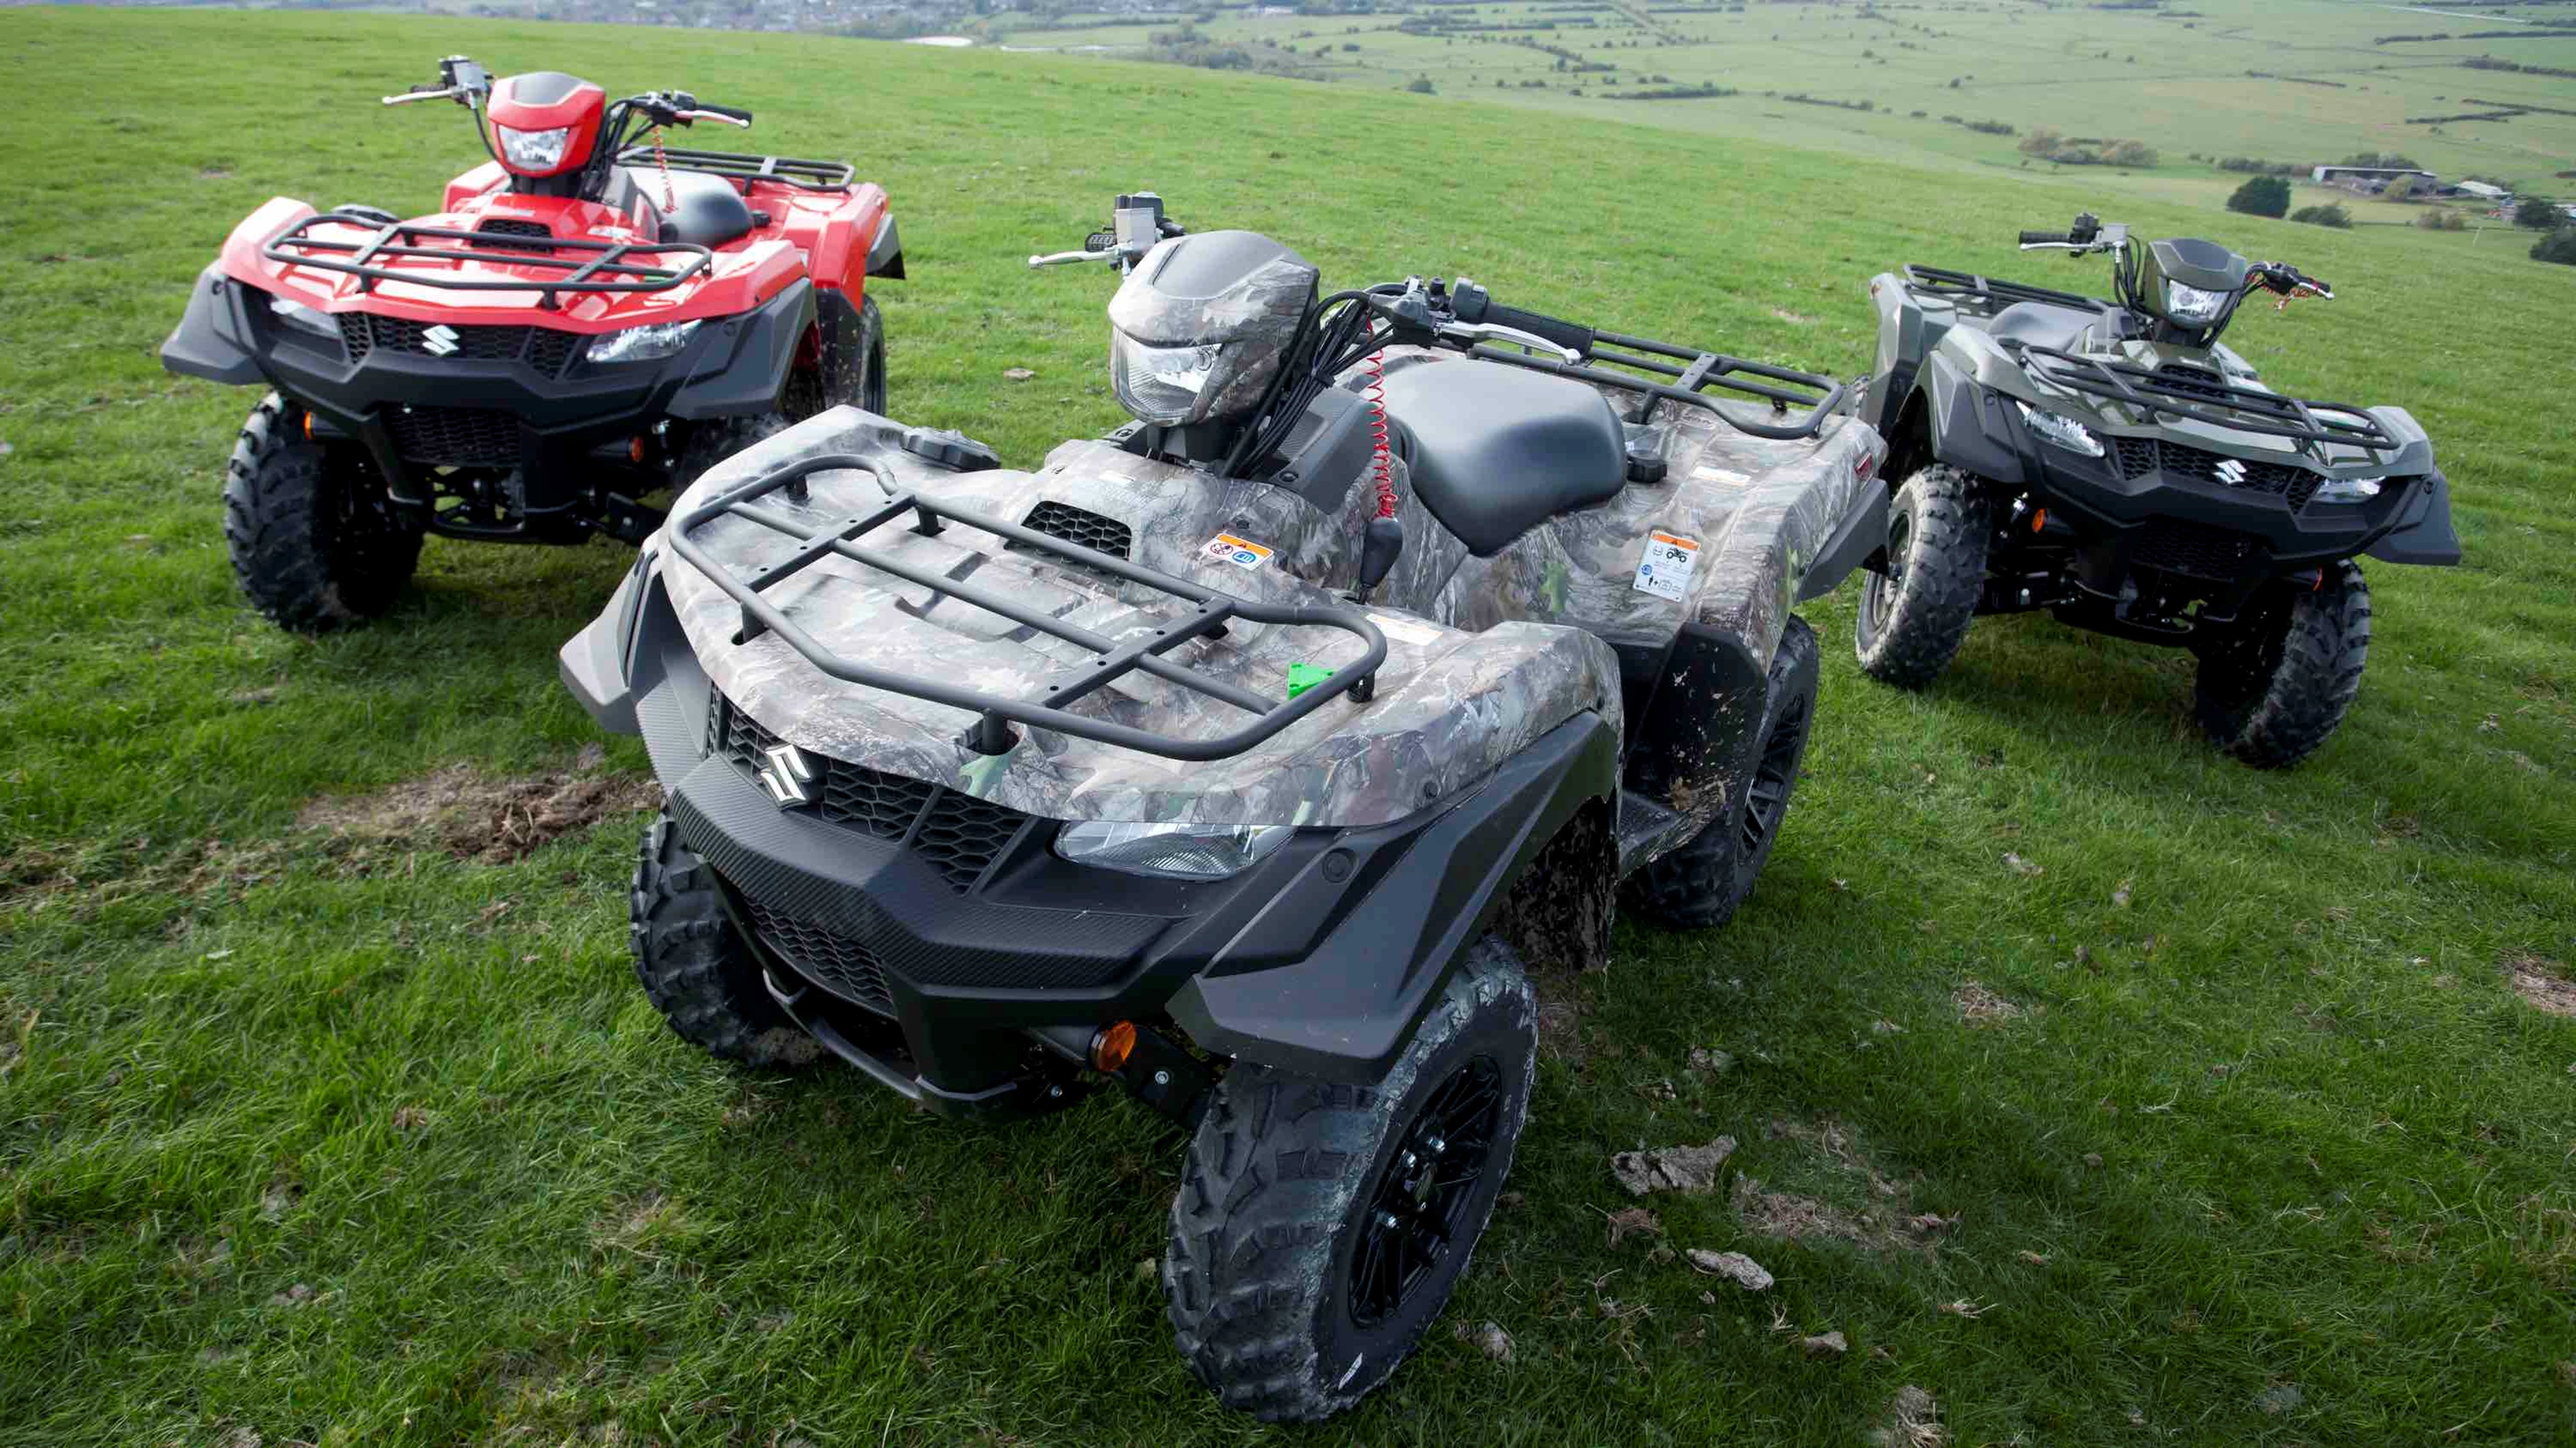 Trio of Suzuki ATVs in a field